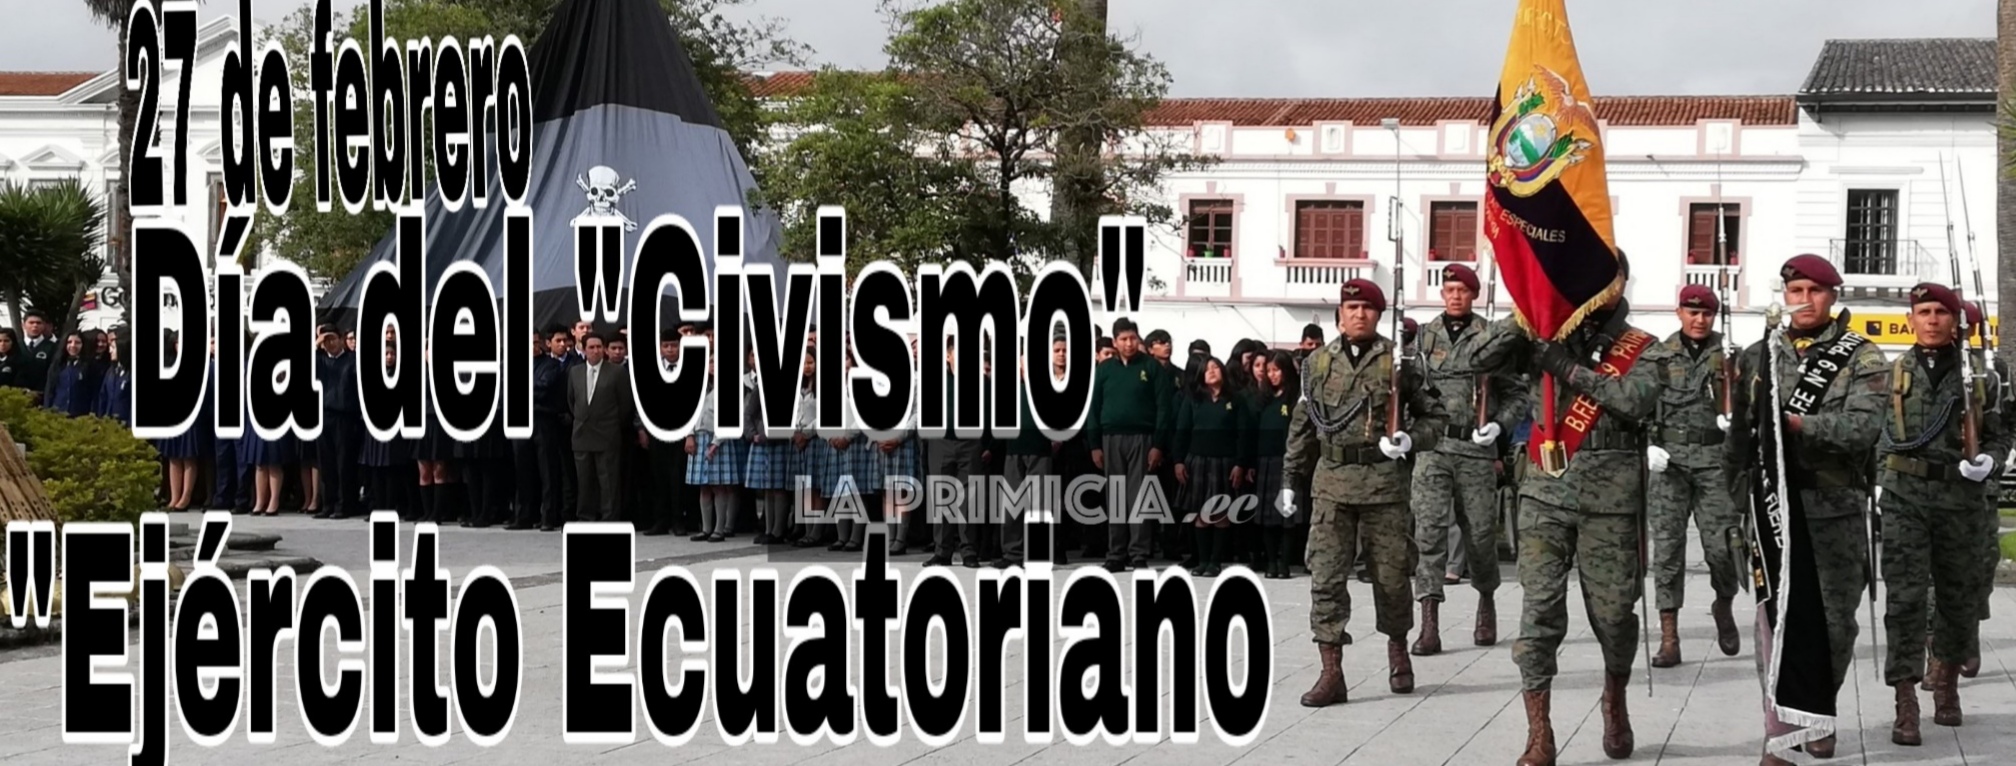 27 De Febrero Dia Del Civismo Y Ejercito Ecuatoriano La Primicia